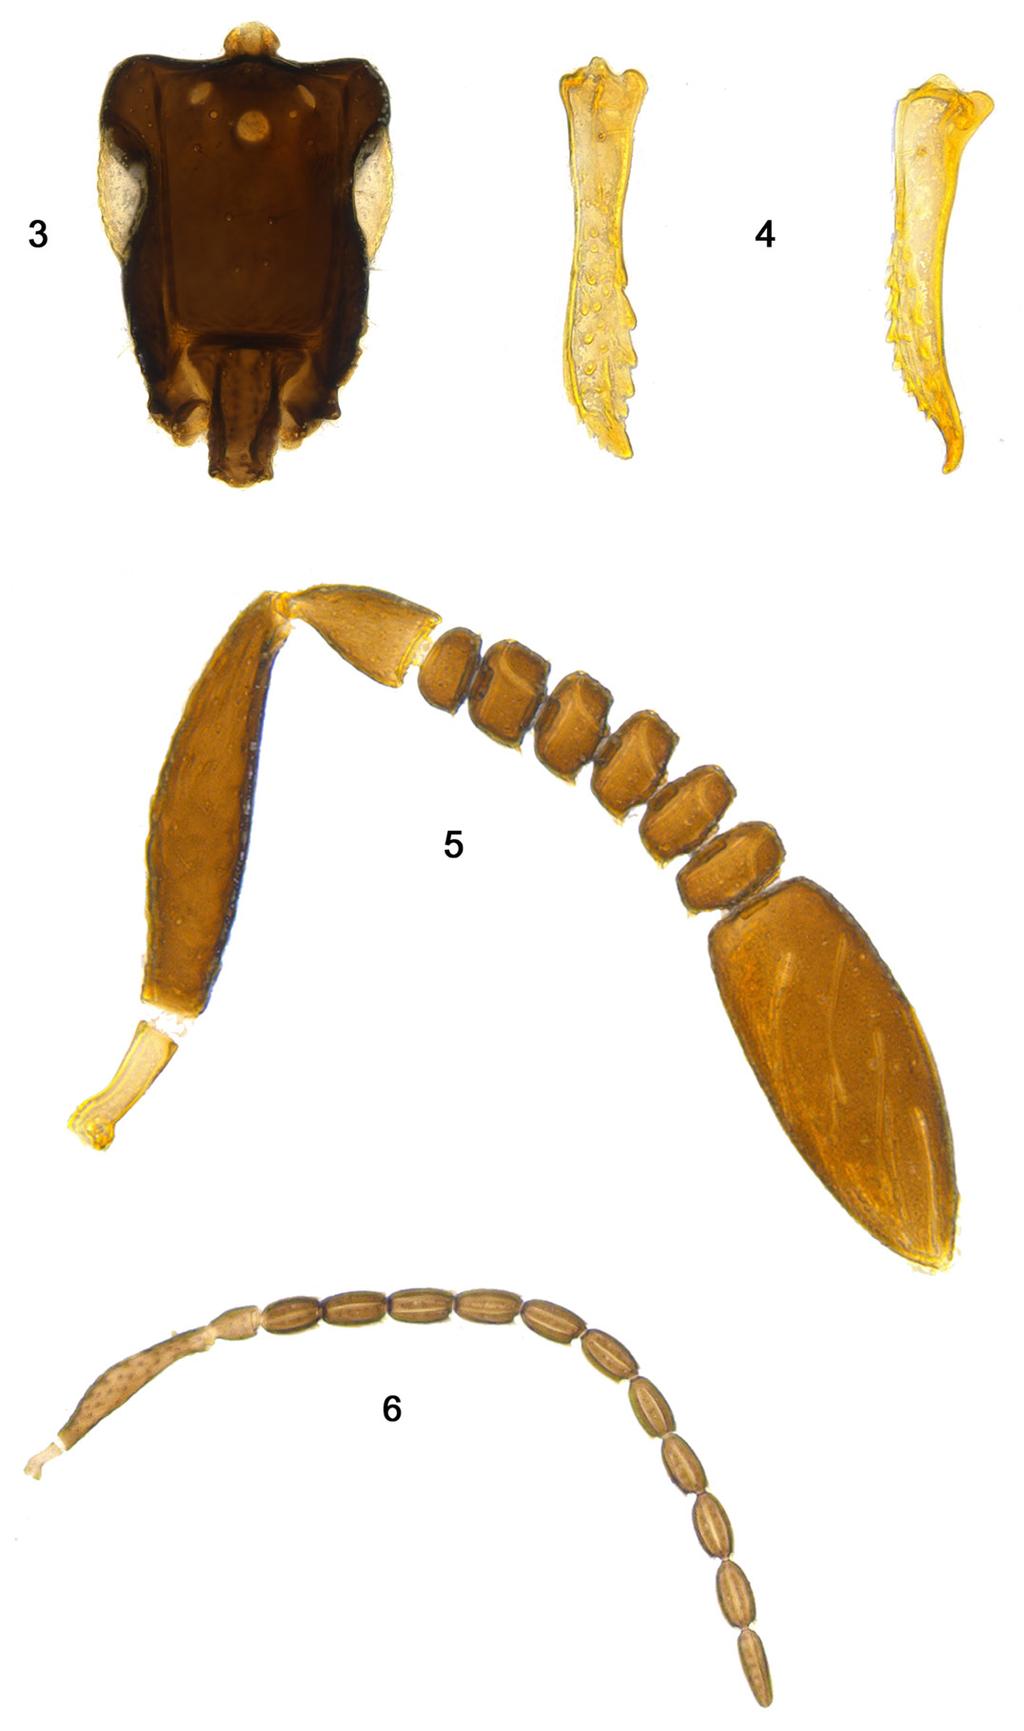 Mesosoma magnified Metacoxa Images 3 6. Eubroncus scutatus sp. nov.